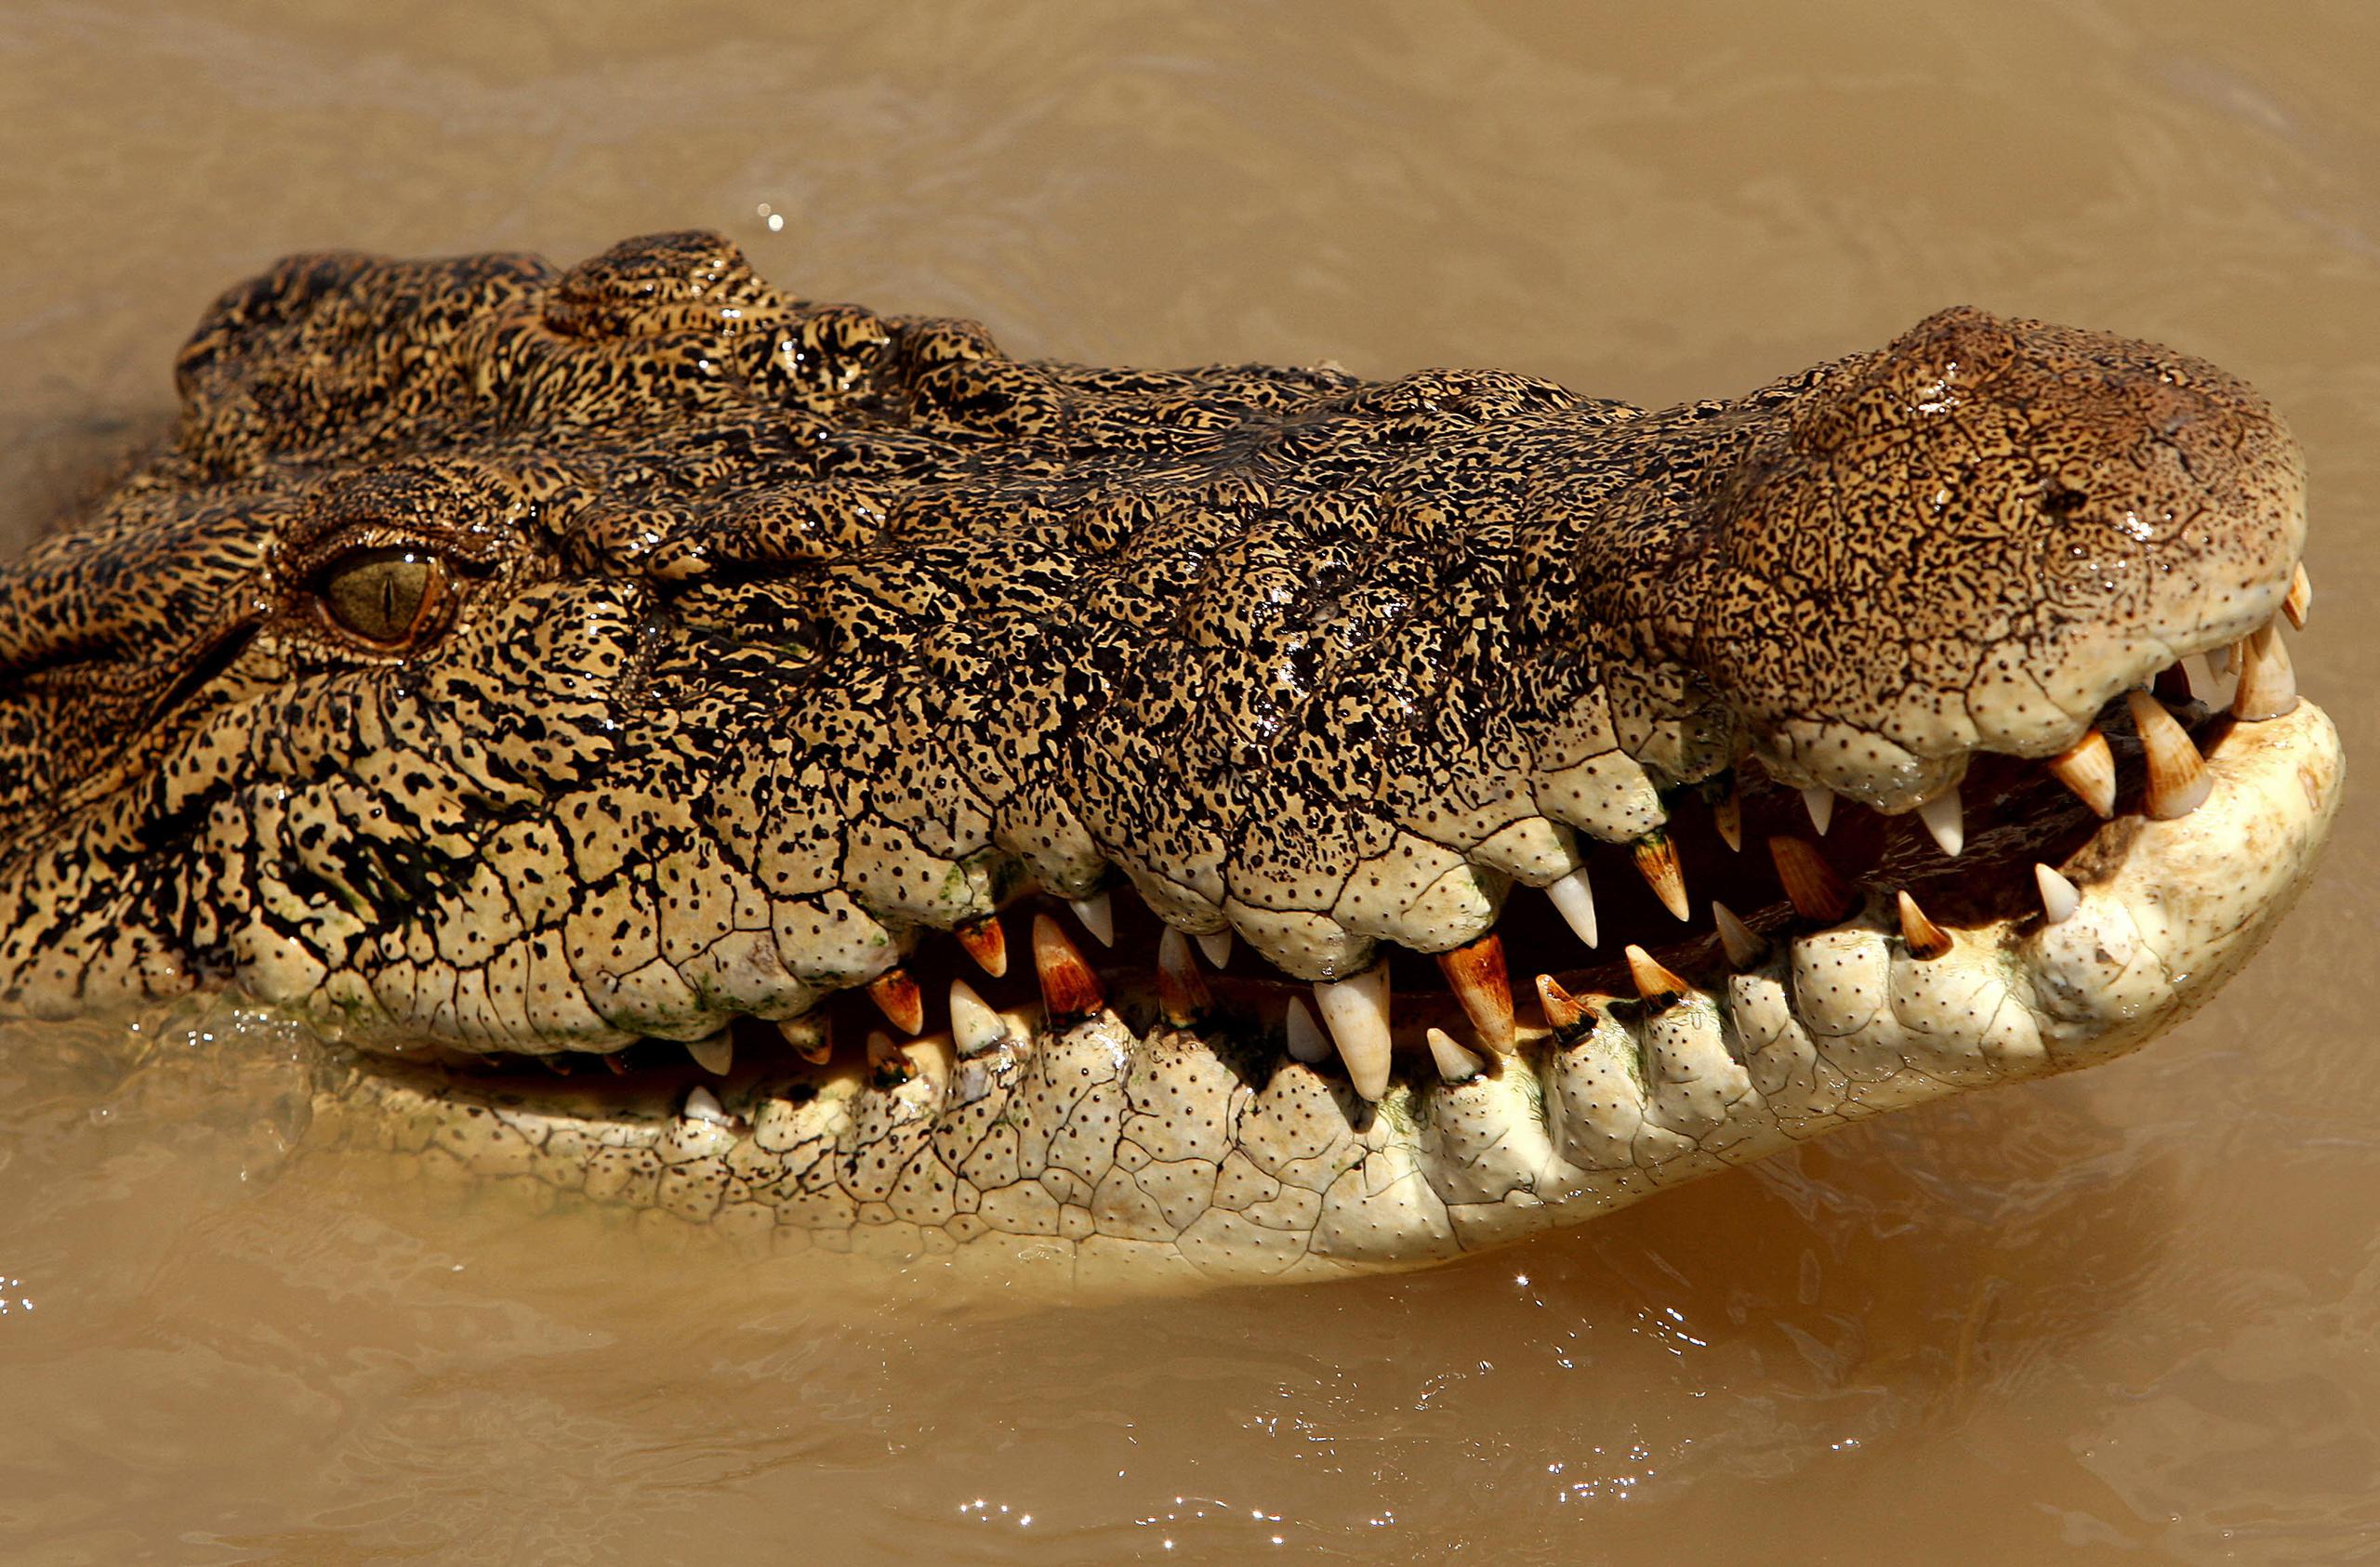 Los cocodrilos de estuario en Australia son conocidos por sus feroces ataques, algunos mortales, y abundan en la región tropical del norte australiano después de que fueran declarados una especie protegida en 1971.